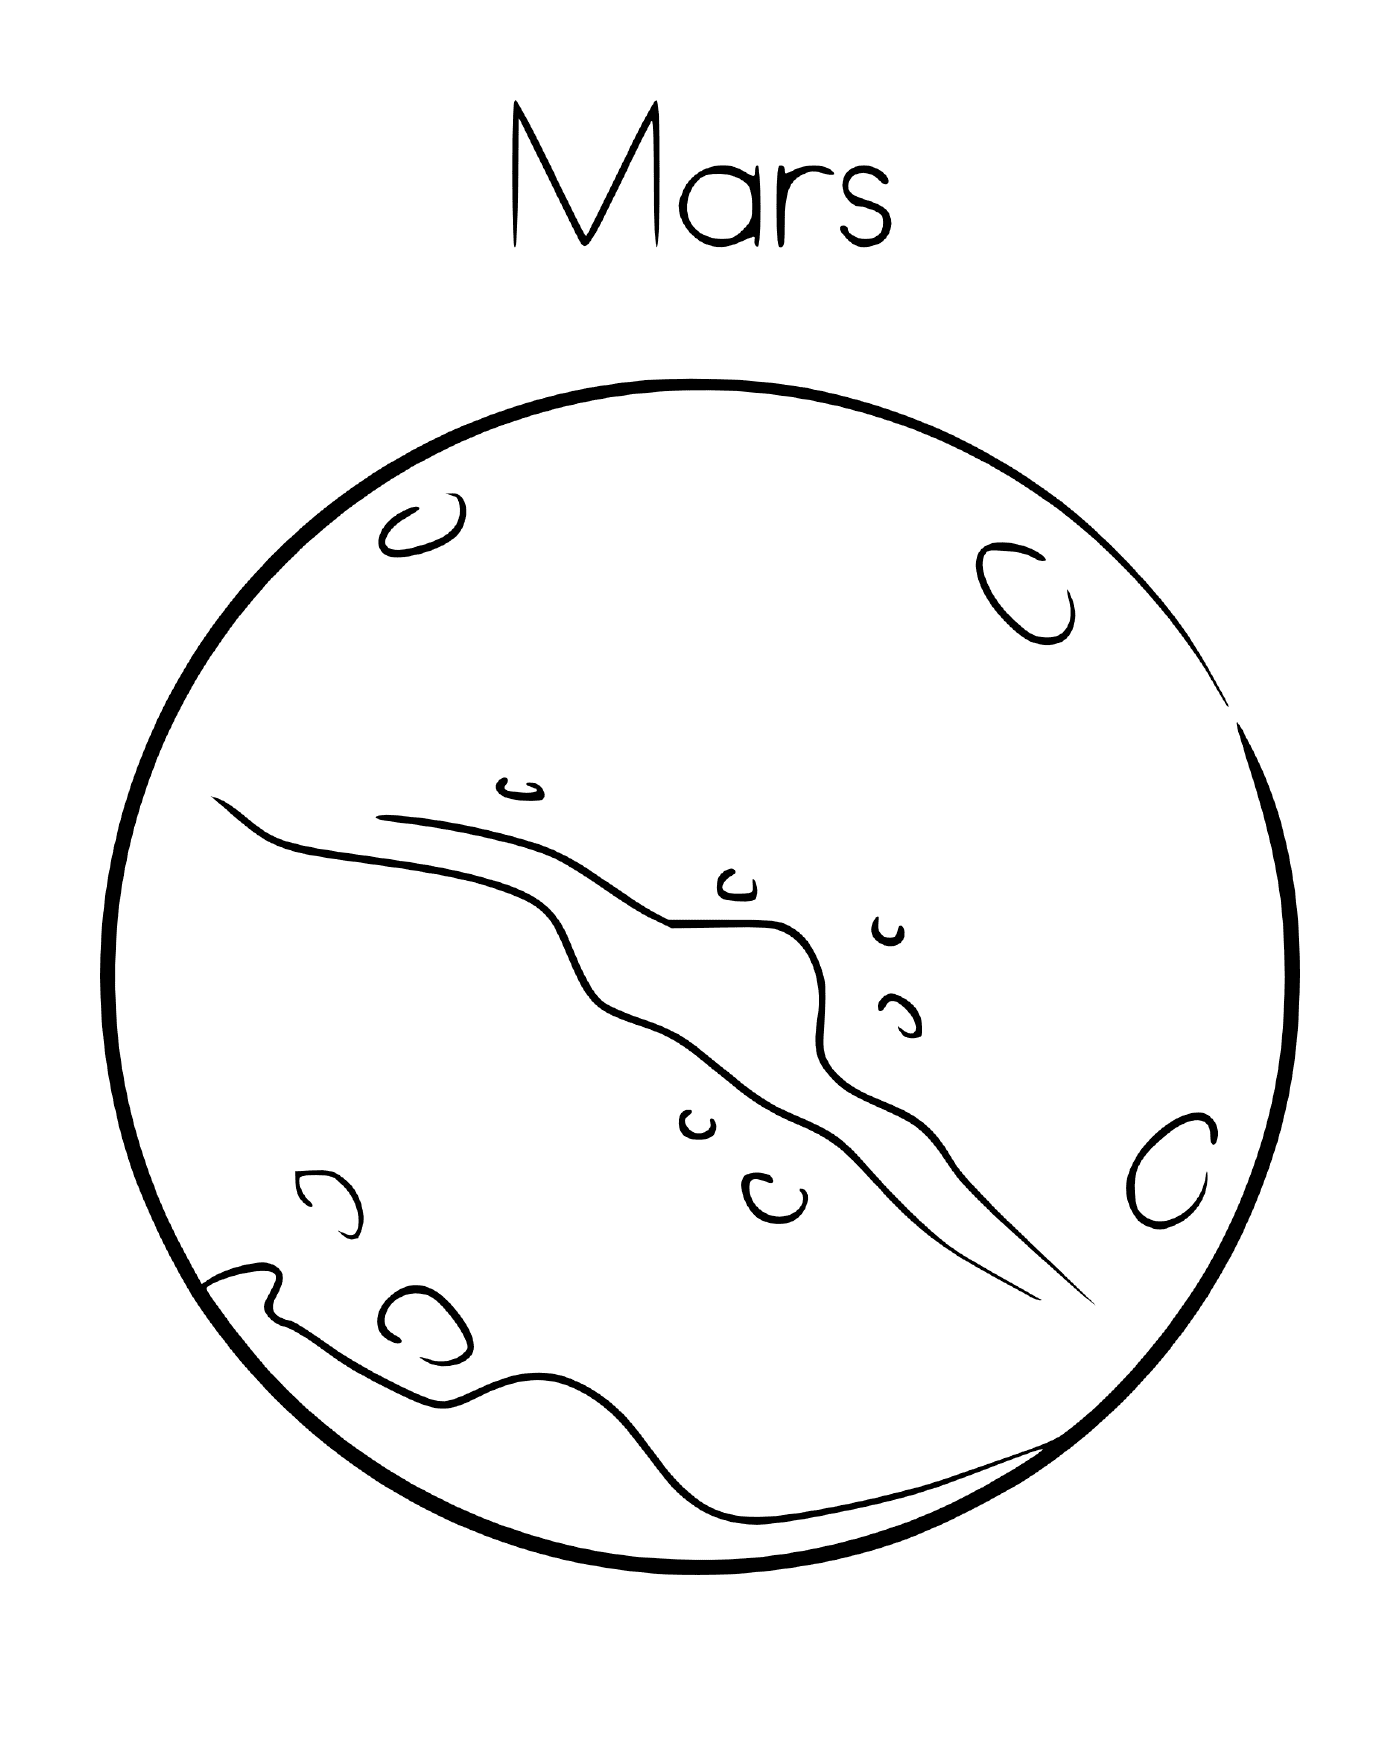  Planeta Marte com suas crateras 